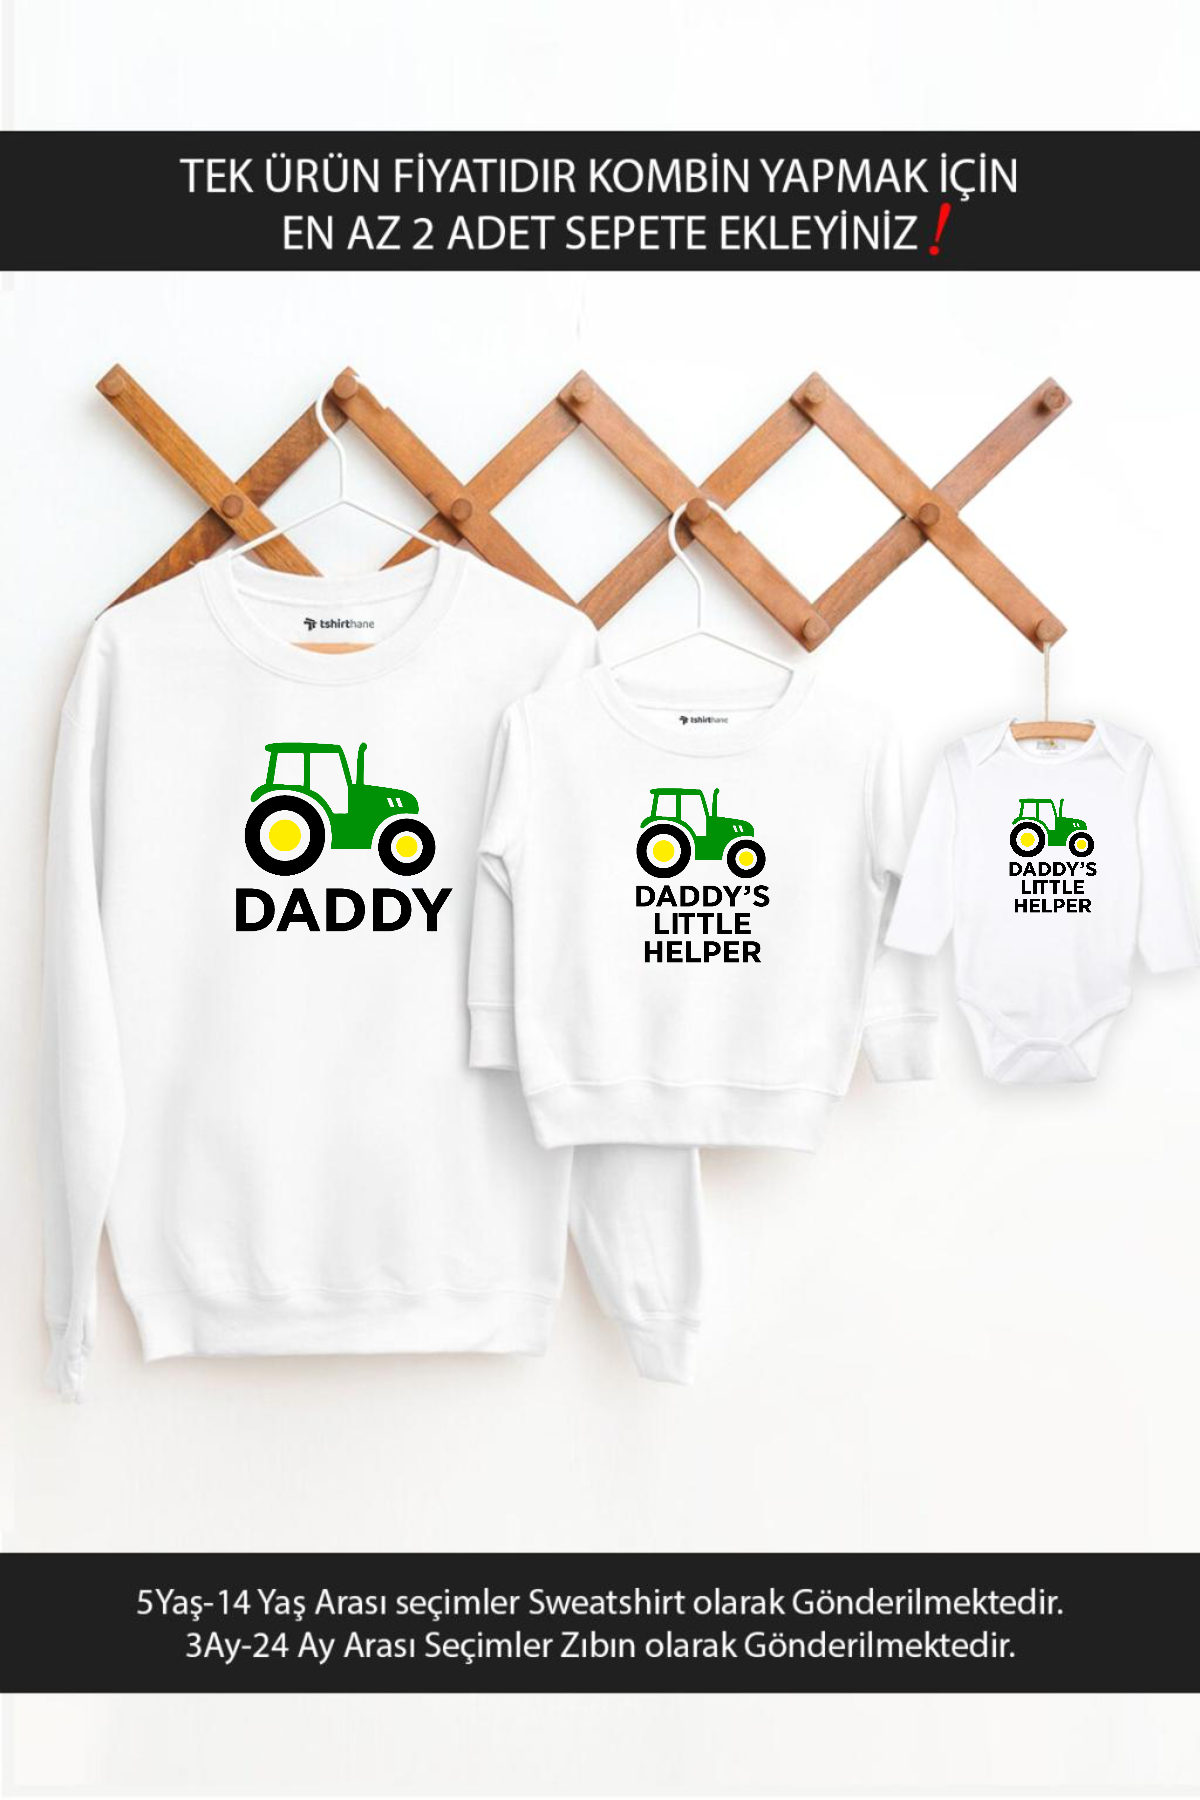 Baba Oğul Kız Traktör Daddy Helper(TEK ÜRÜN FİYATIDIR KOMBİN YAPMAK İÇİN EN AZ 2 ADET SEPETE EKLEYİN